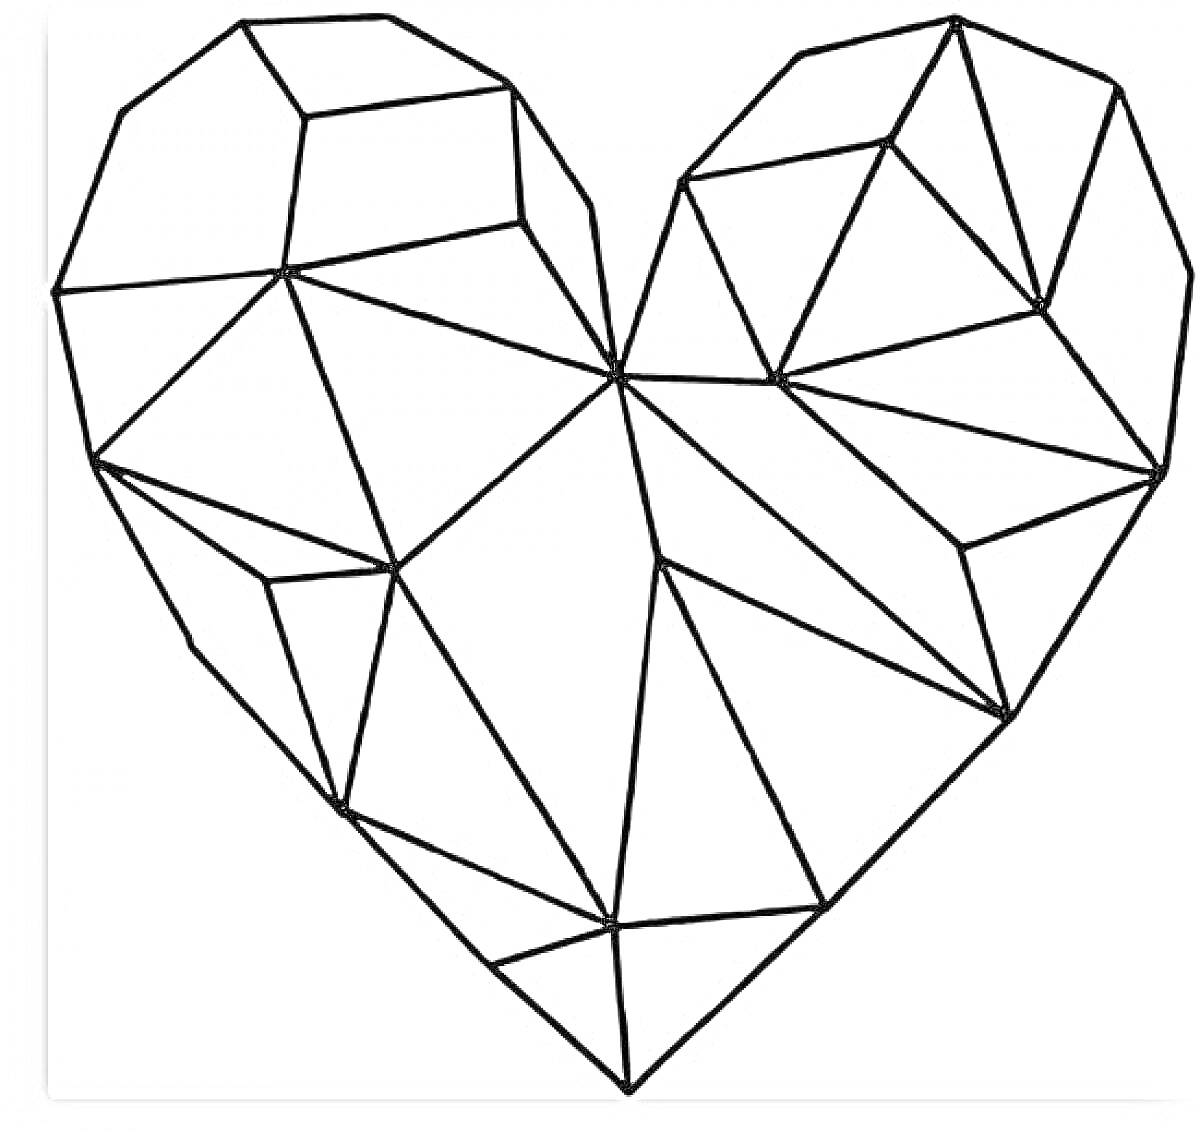 Раскраска Оригами сердце, состоящее из многоугольников